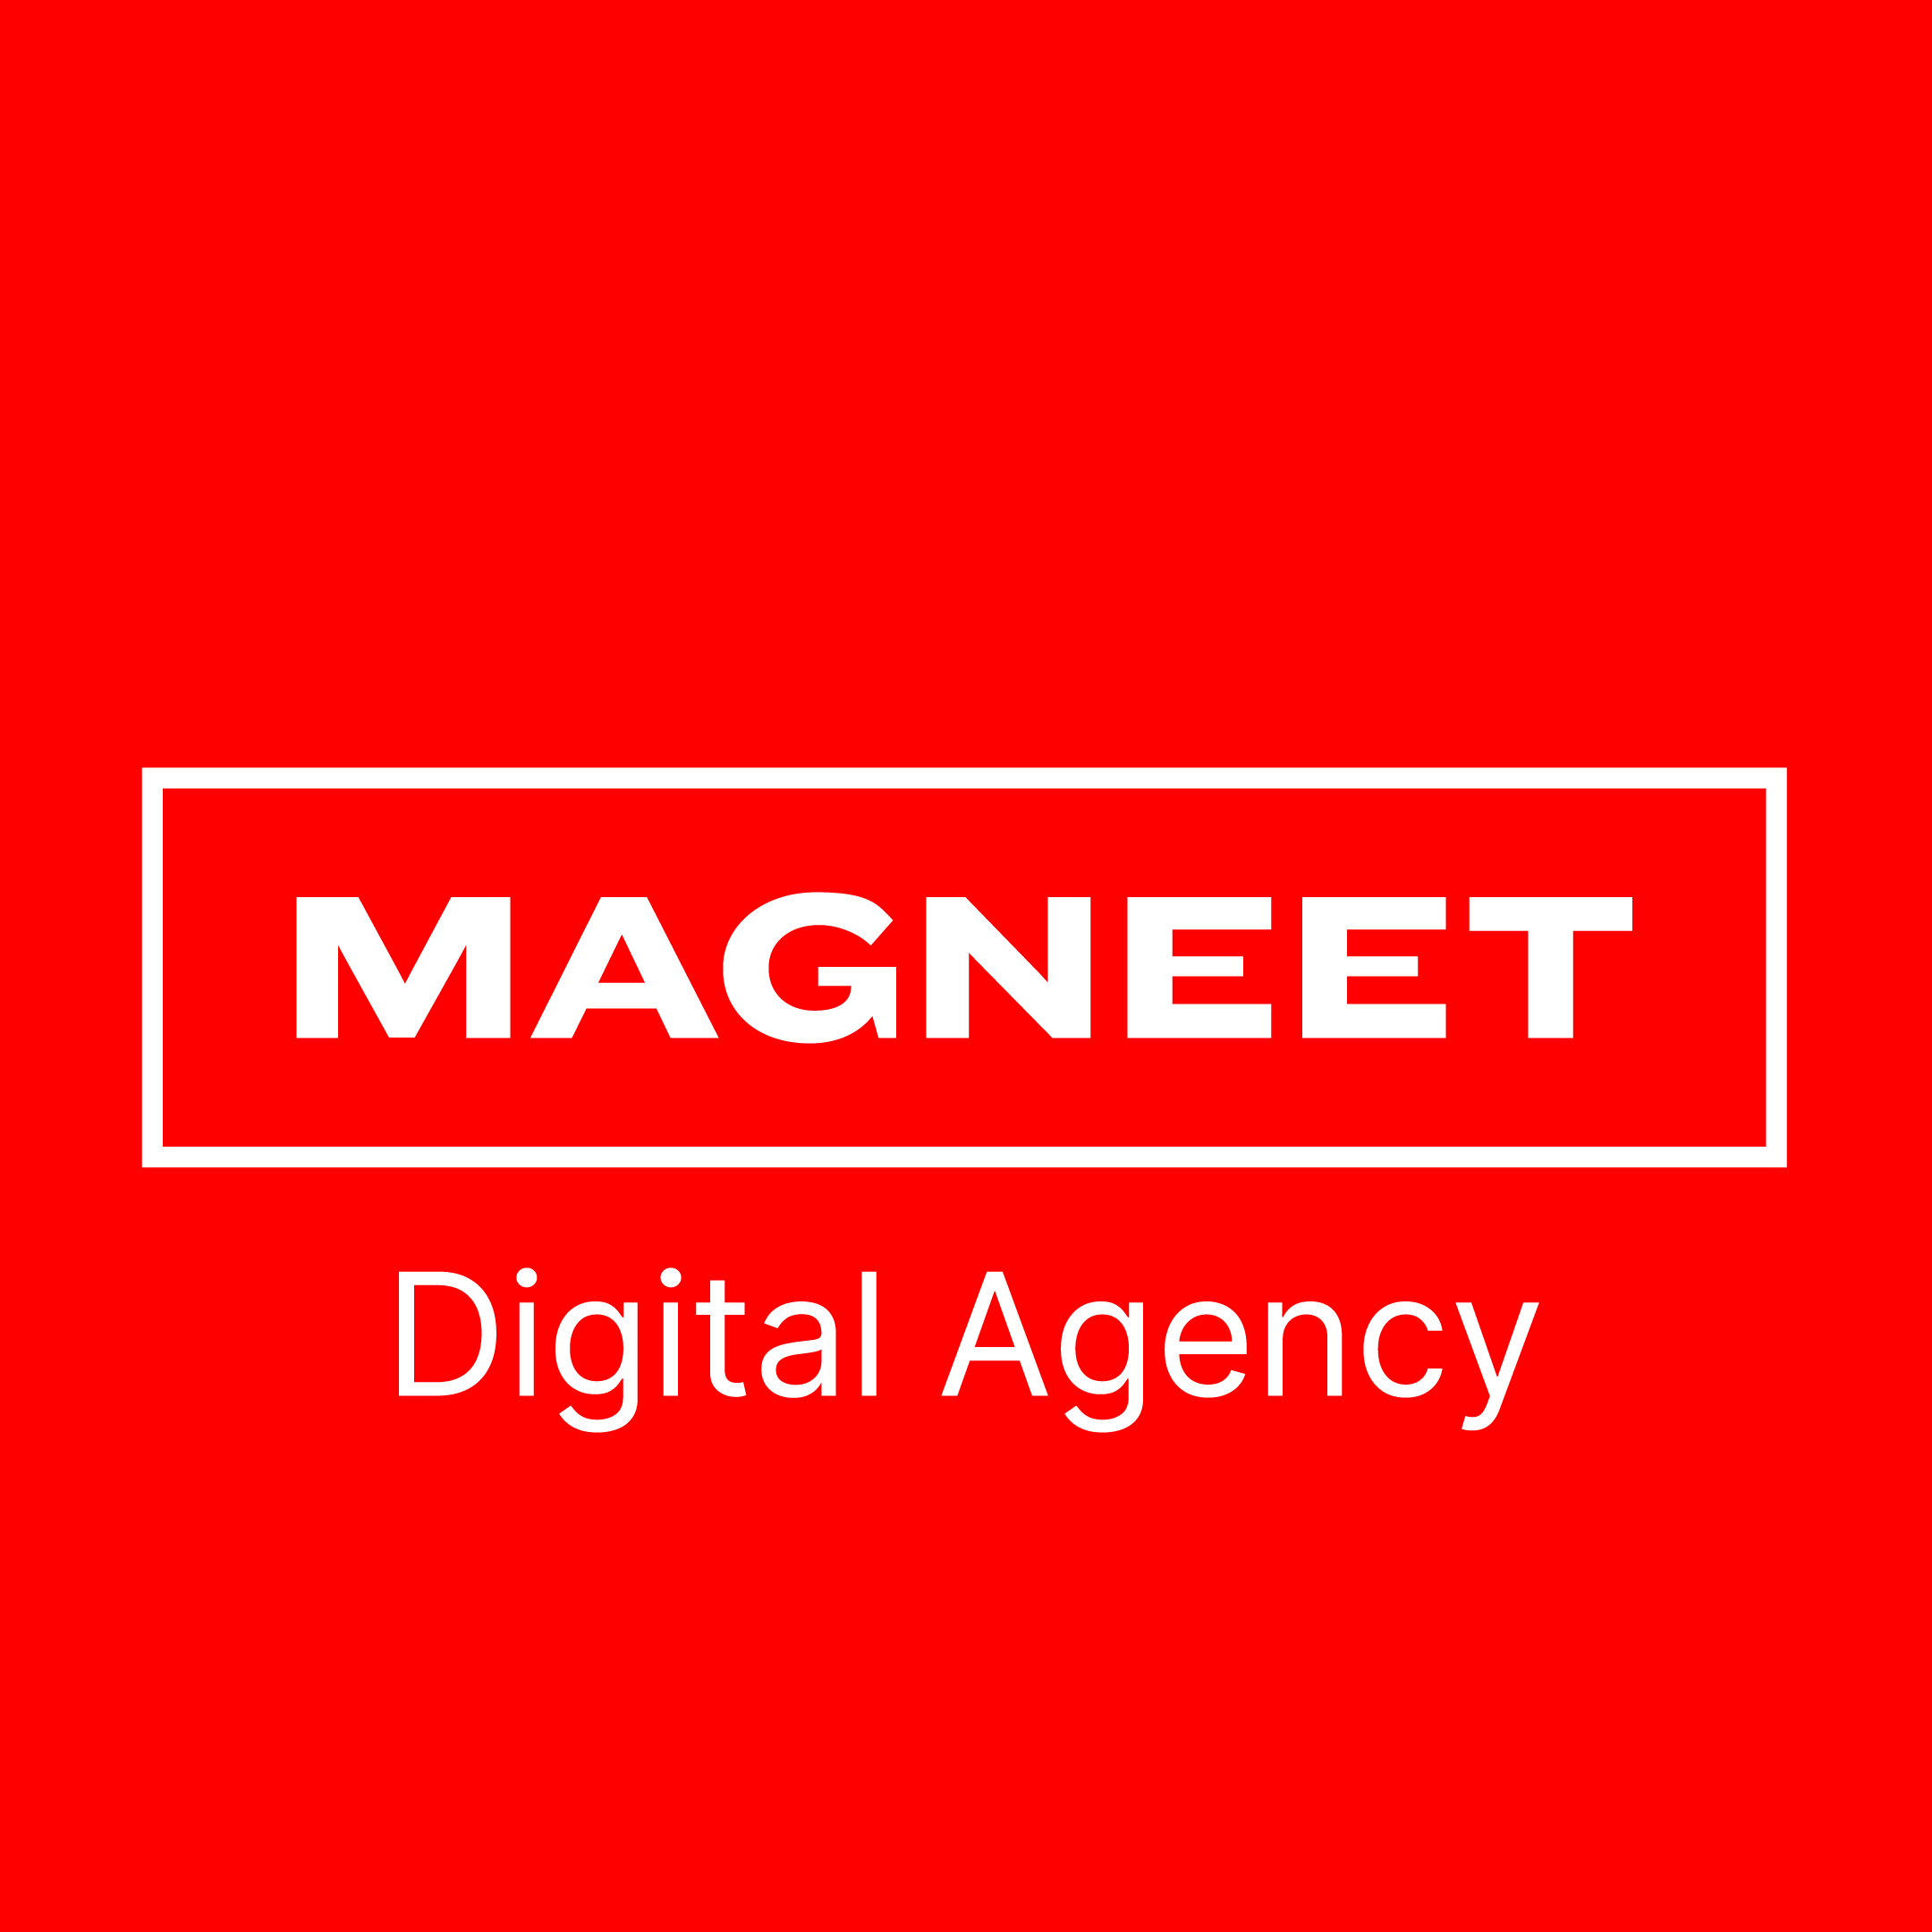 Bureau Magneet